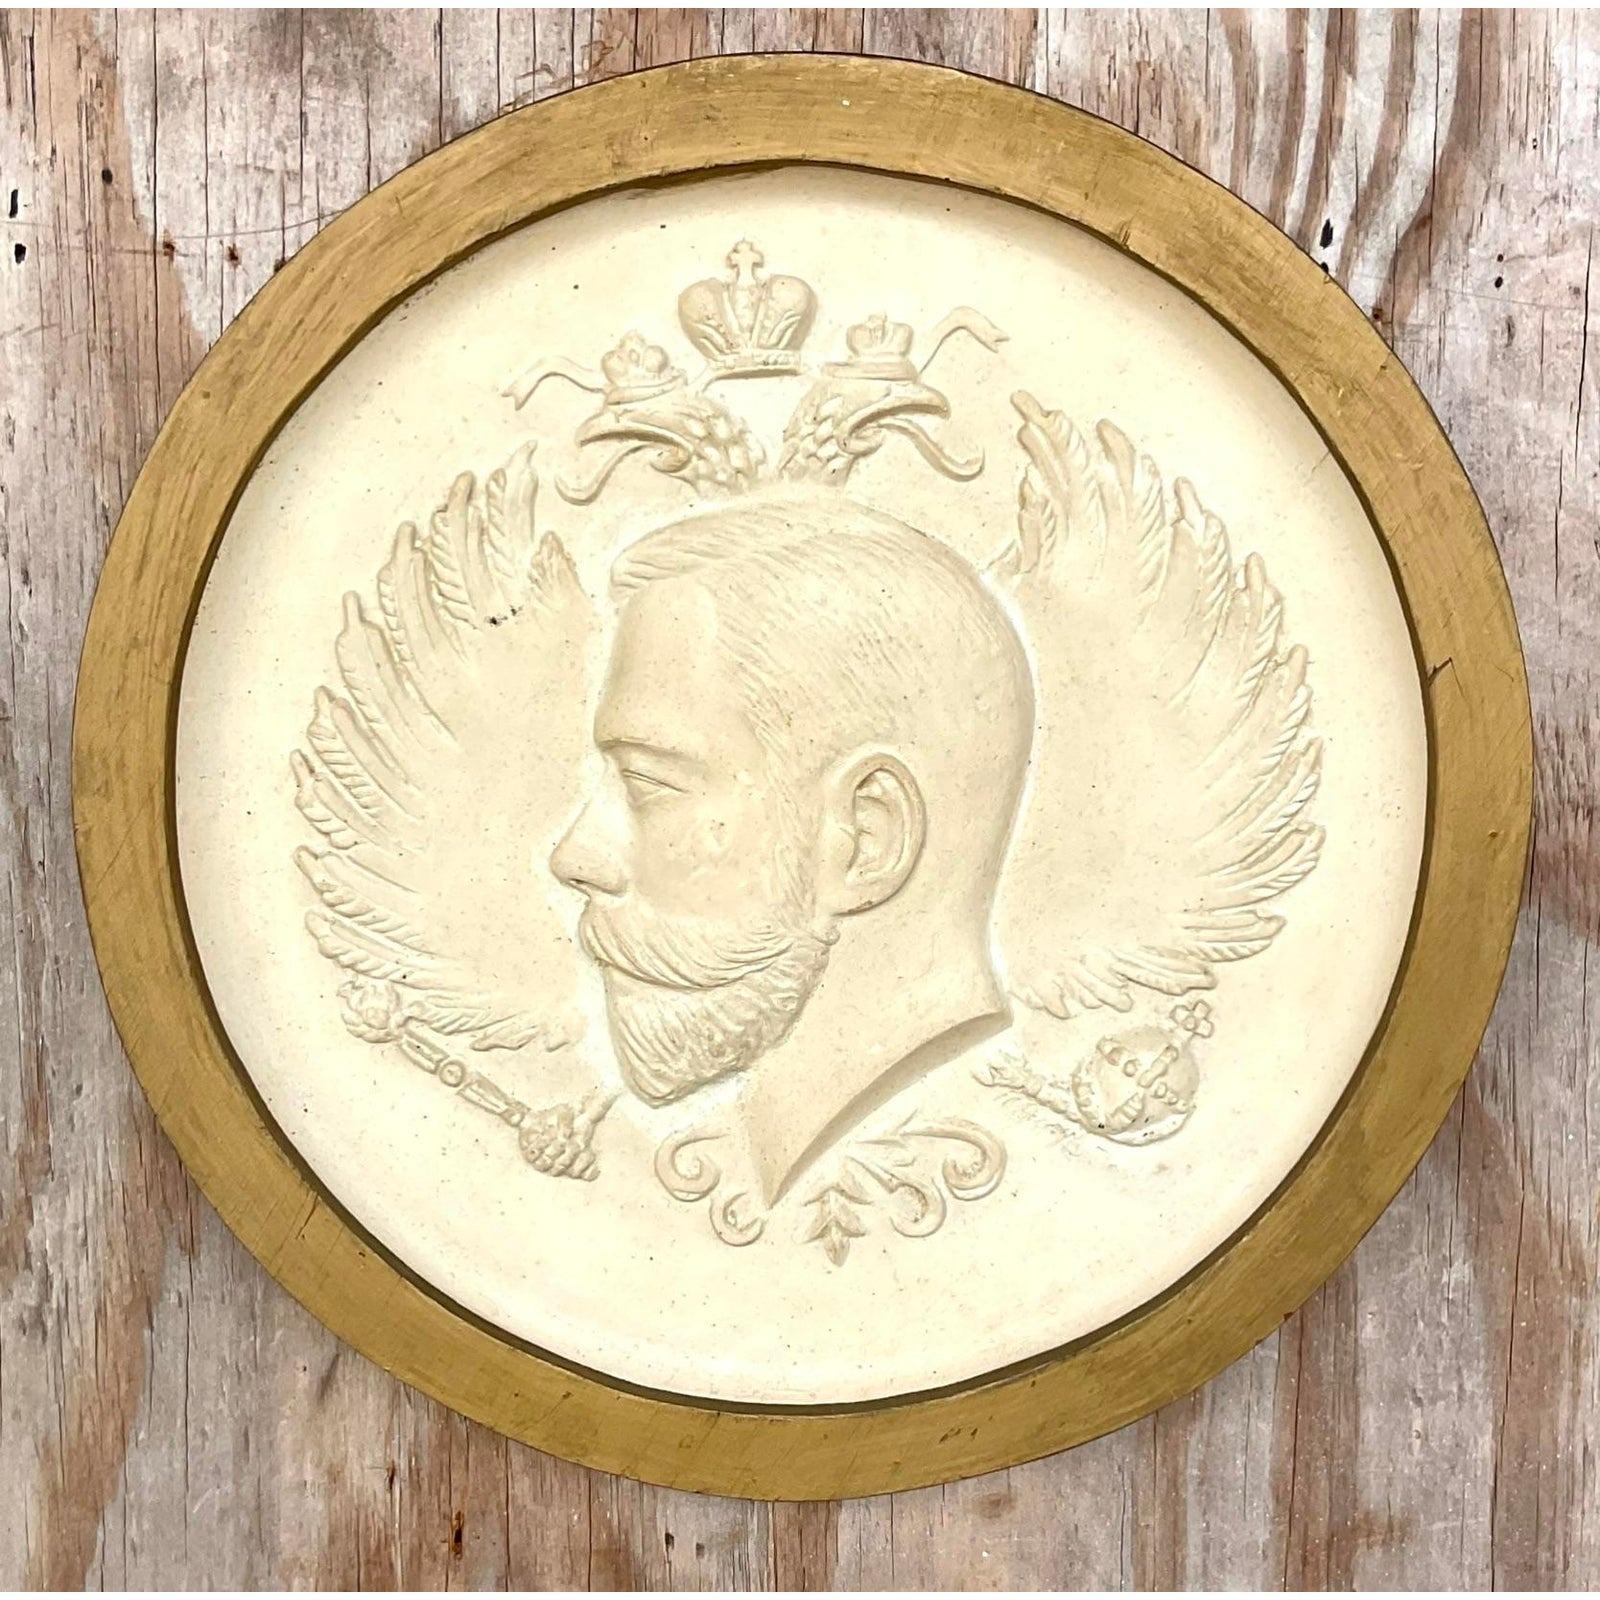 Un fabuleux médaillon Boho vintage. Un profil chic d'un homme russe. Peut-être le tsar Nicolas ? Un beau relief en plâtre avec un cadre doré. Acquis d'une propriété de Palm Beach.